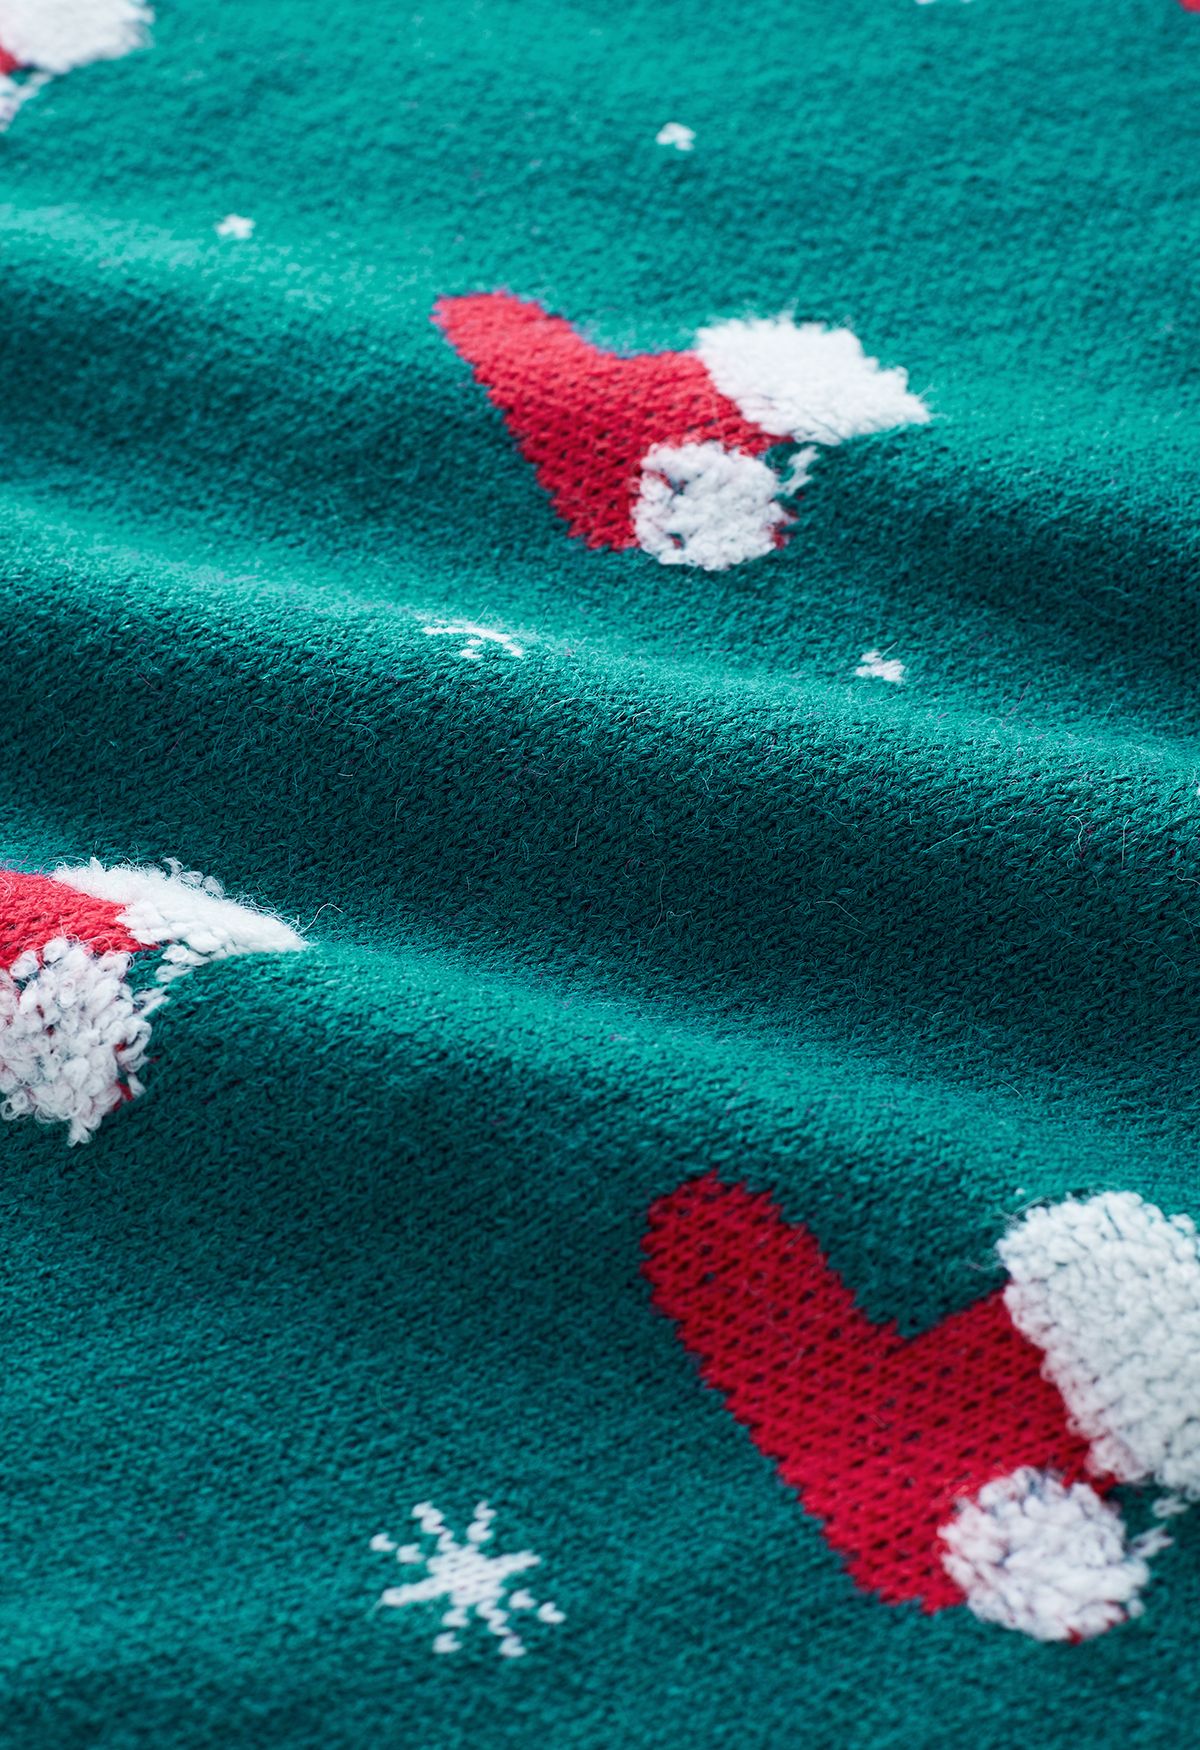 Chandail en tricot de flocon de neige avec bas de Noël